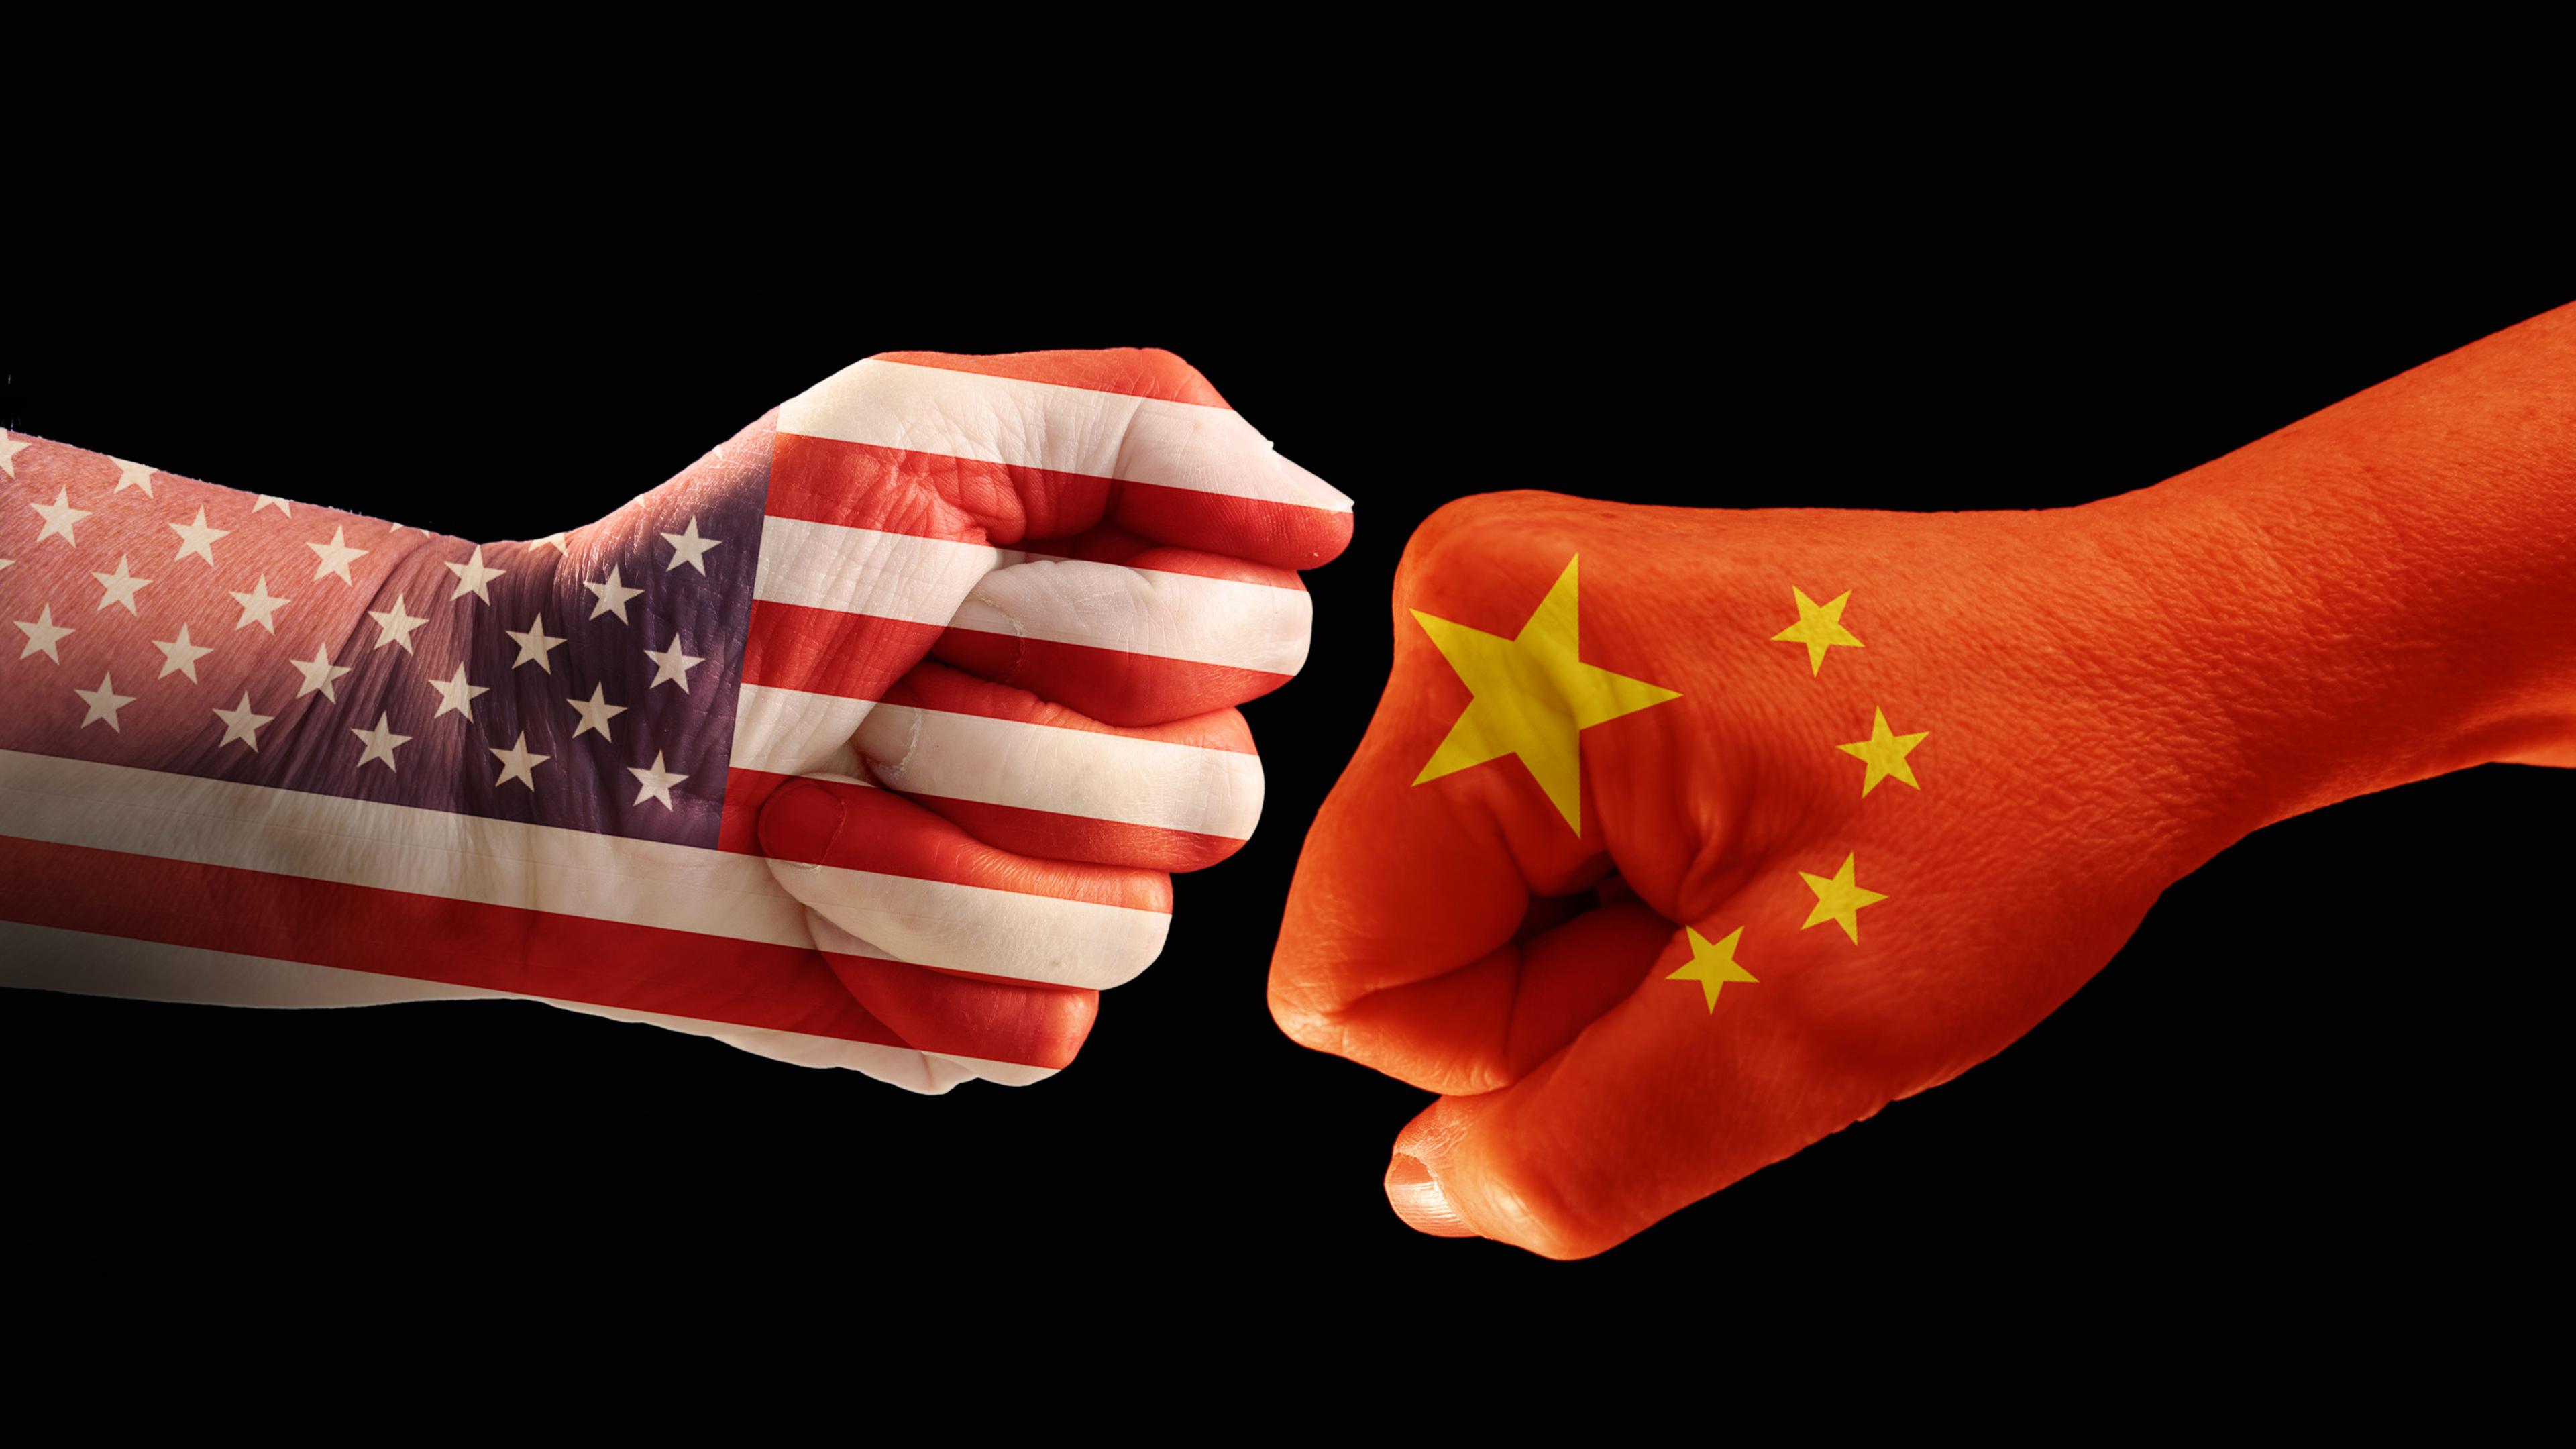  Zwei Fäuste in den Farben der Nationalflaggen von USA und China. Es ist ein Symbolbild für den Handelskrieg